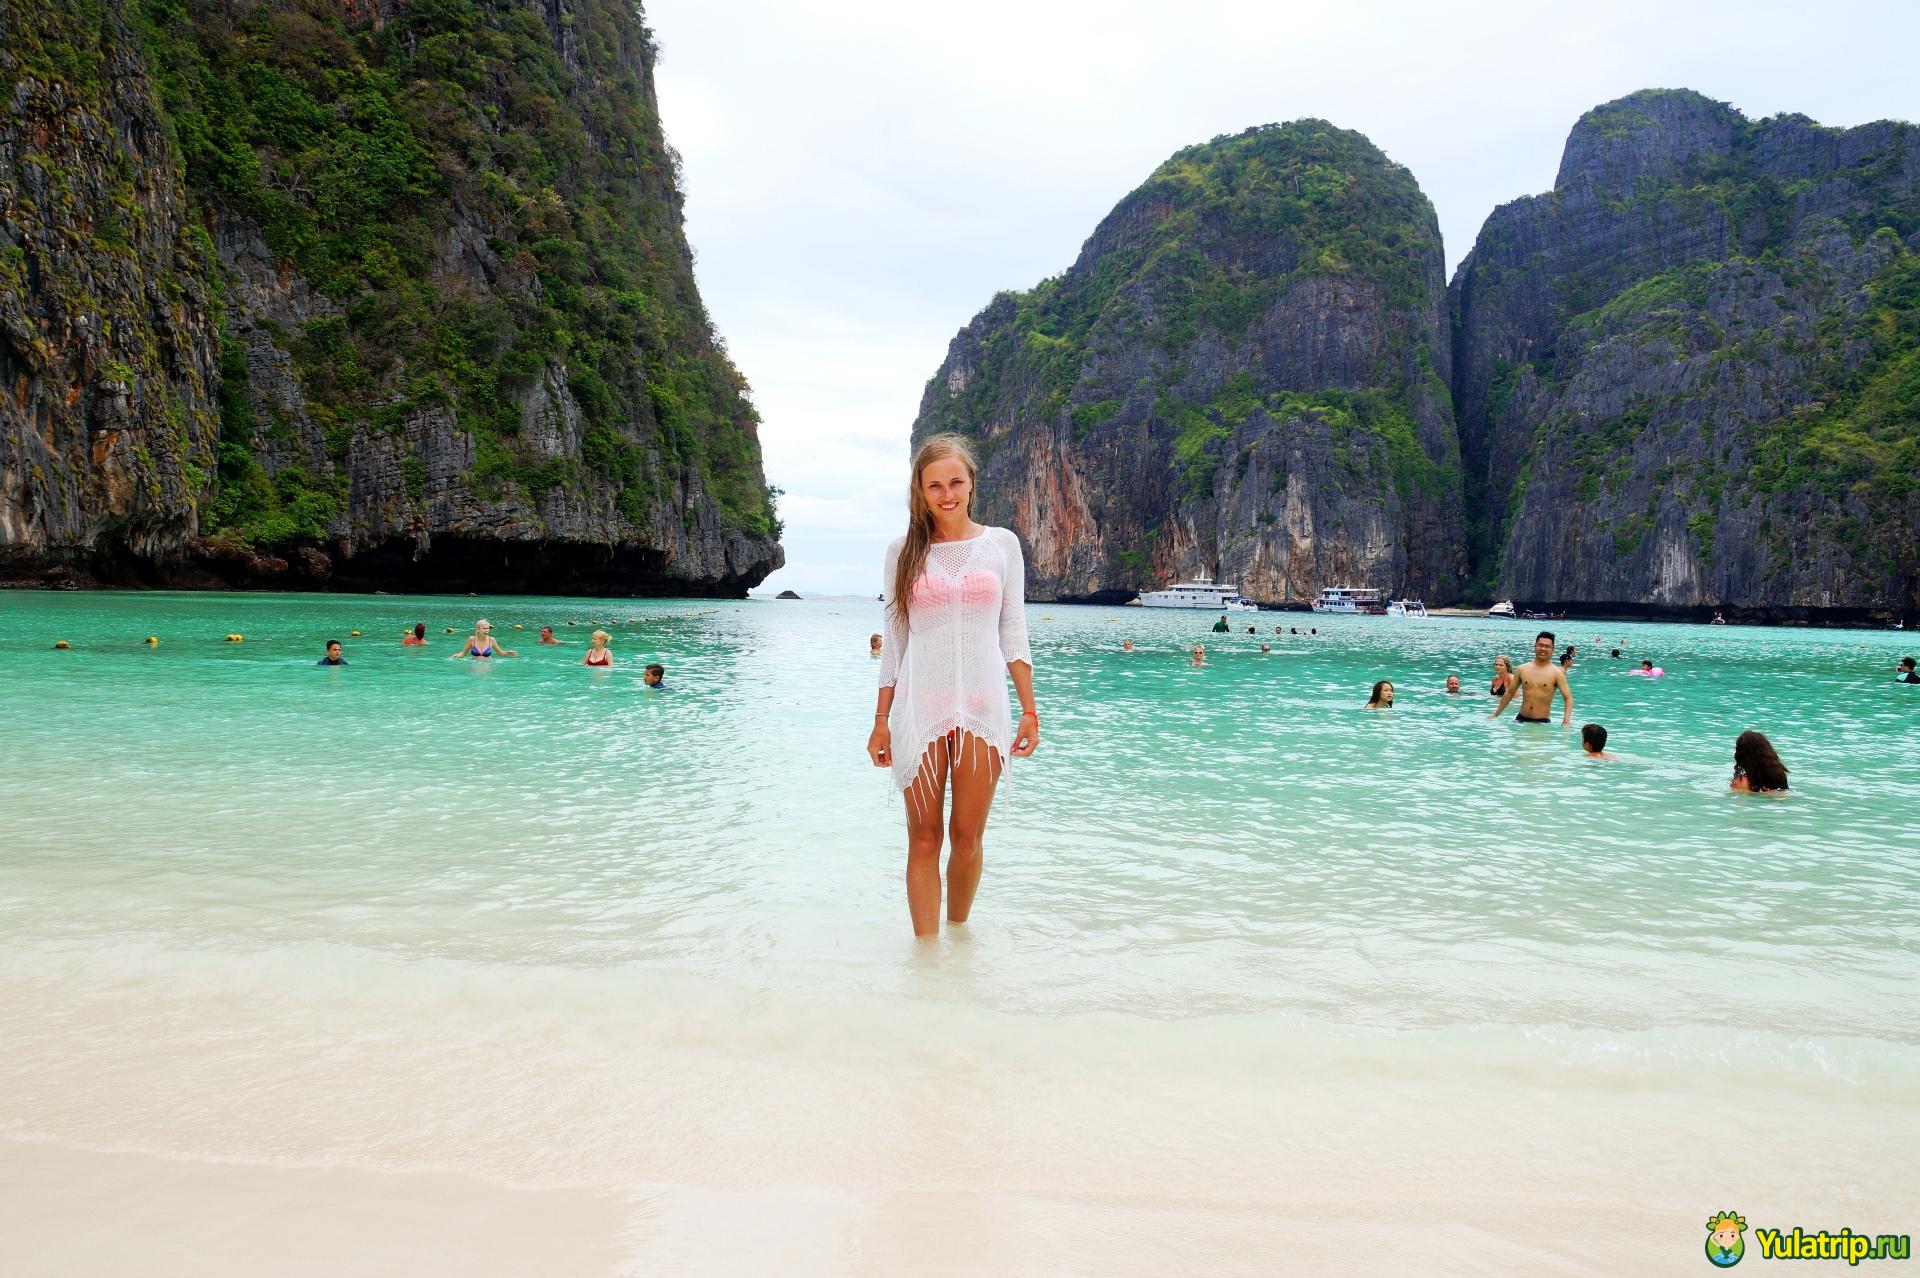 Где лучше отдыхать в тайланде? сравнение курортов